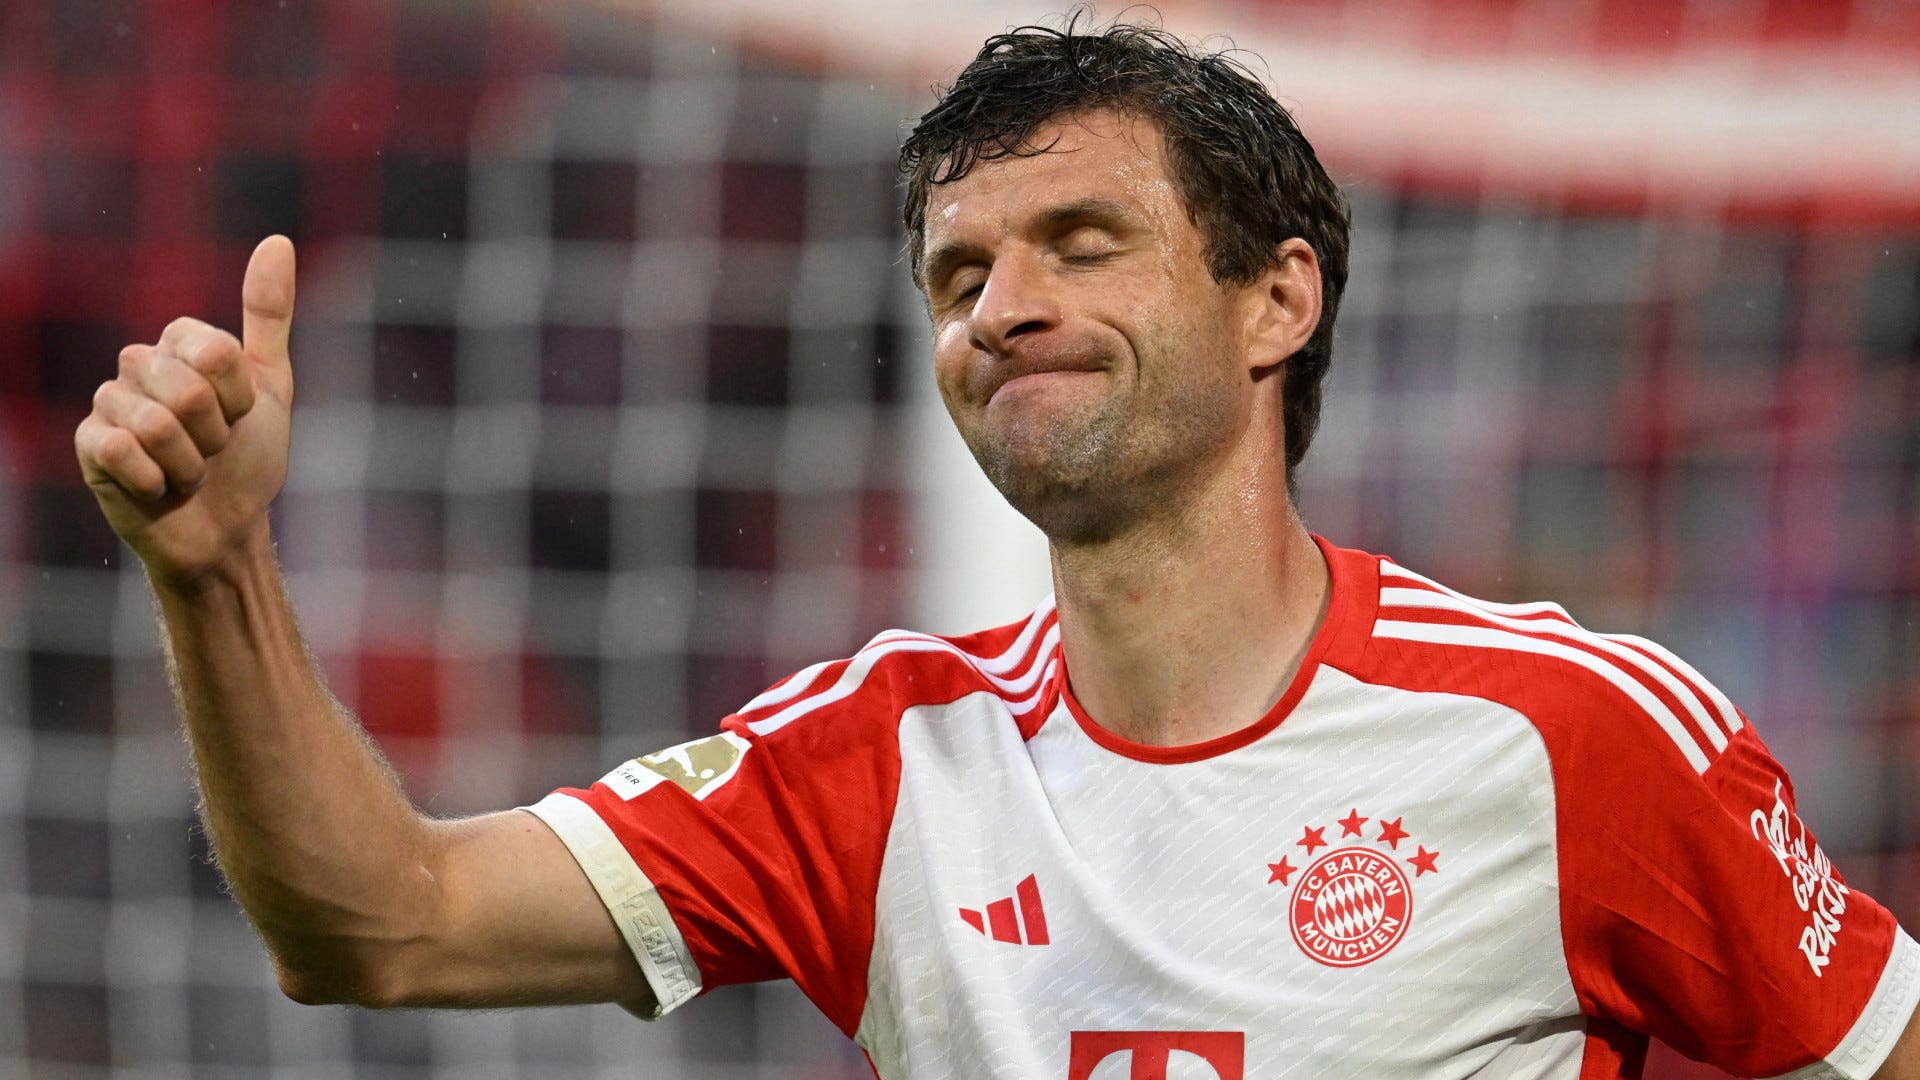 Doppelter Verletzungsschock für FC Bayern München! Serge Gnabry verletzt sich bei Pokalspiel - Thomas Müller hat eine Zerrung